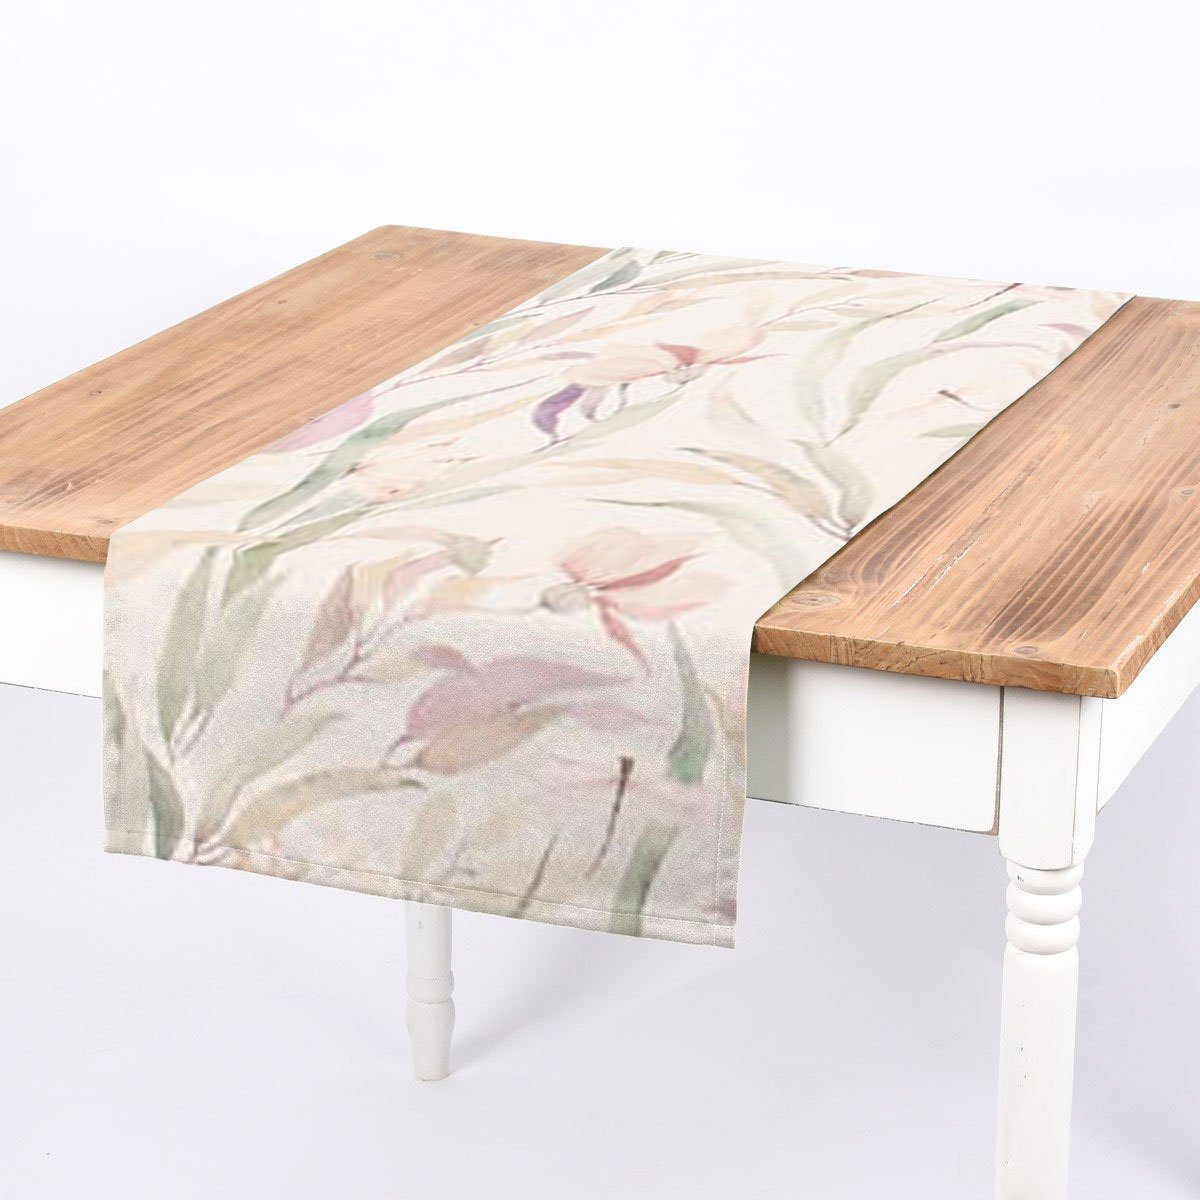 SCHÖNER LEBEN. Tischläufer SCHÖNER LEBEN. Tischläufer Digitaldruck Blätter weiß pastell 40x160, handmade